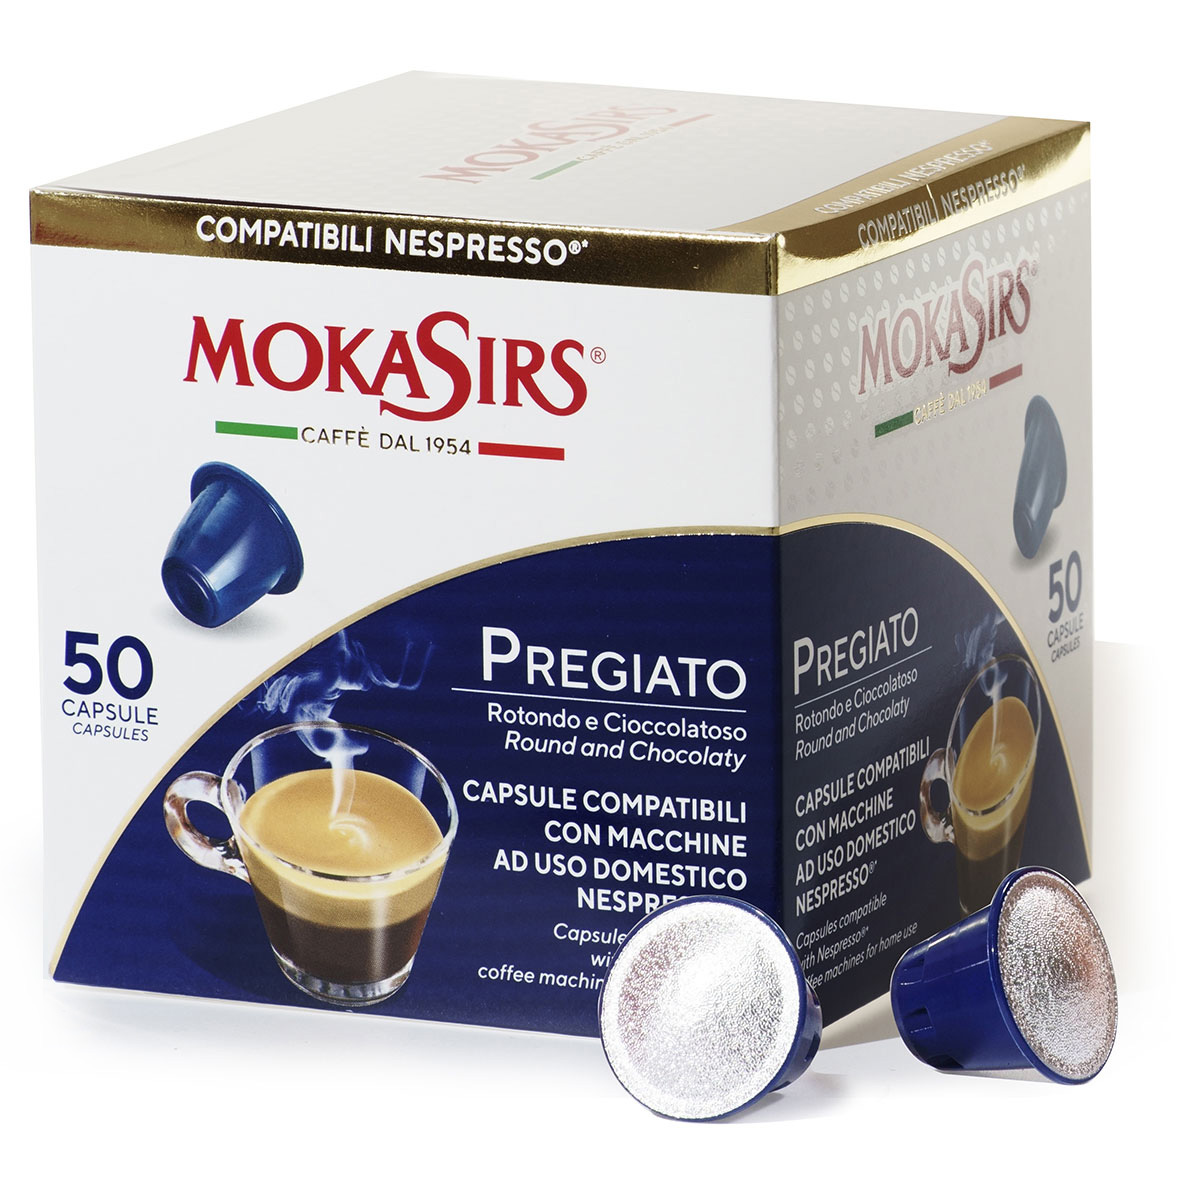 MokaSirs Pregiato Nespresso Compatible Coffee Capsules 50 pcs - El moretto